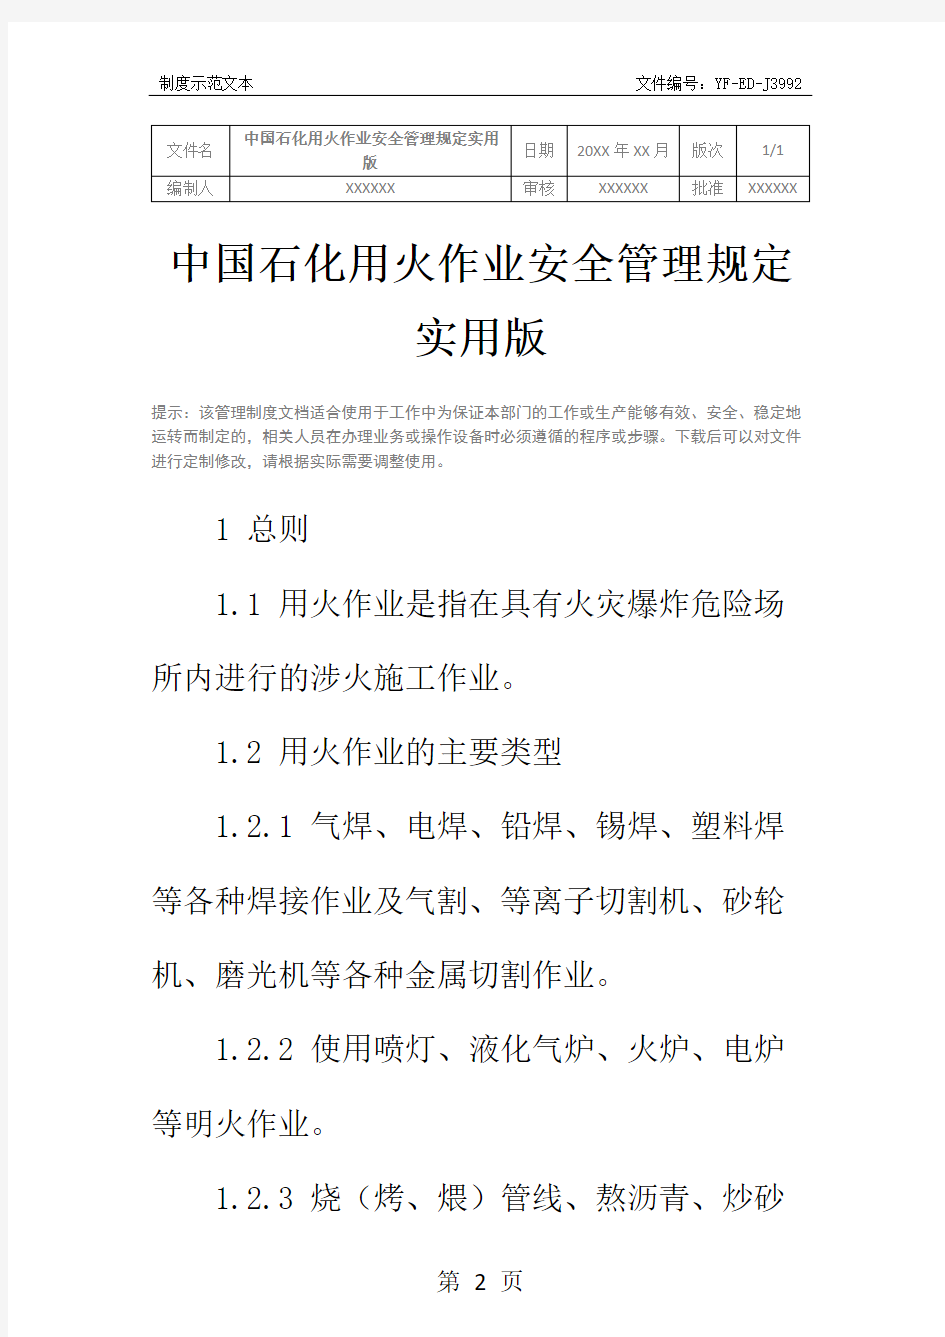 中国石化用火作业安全管理规定实用版